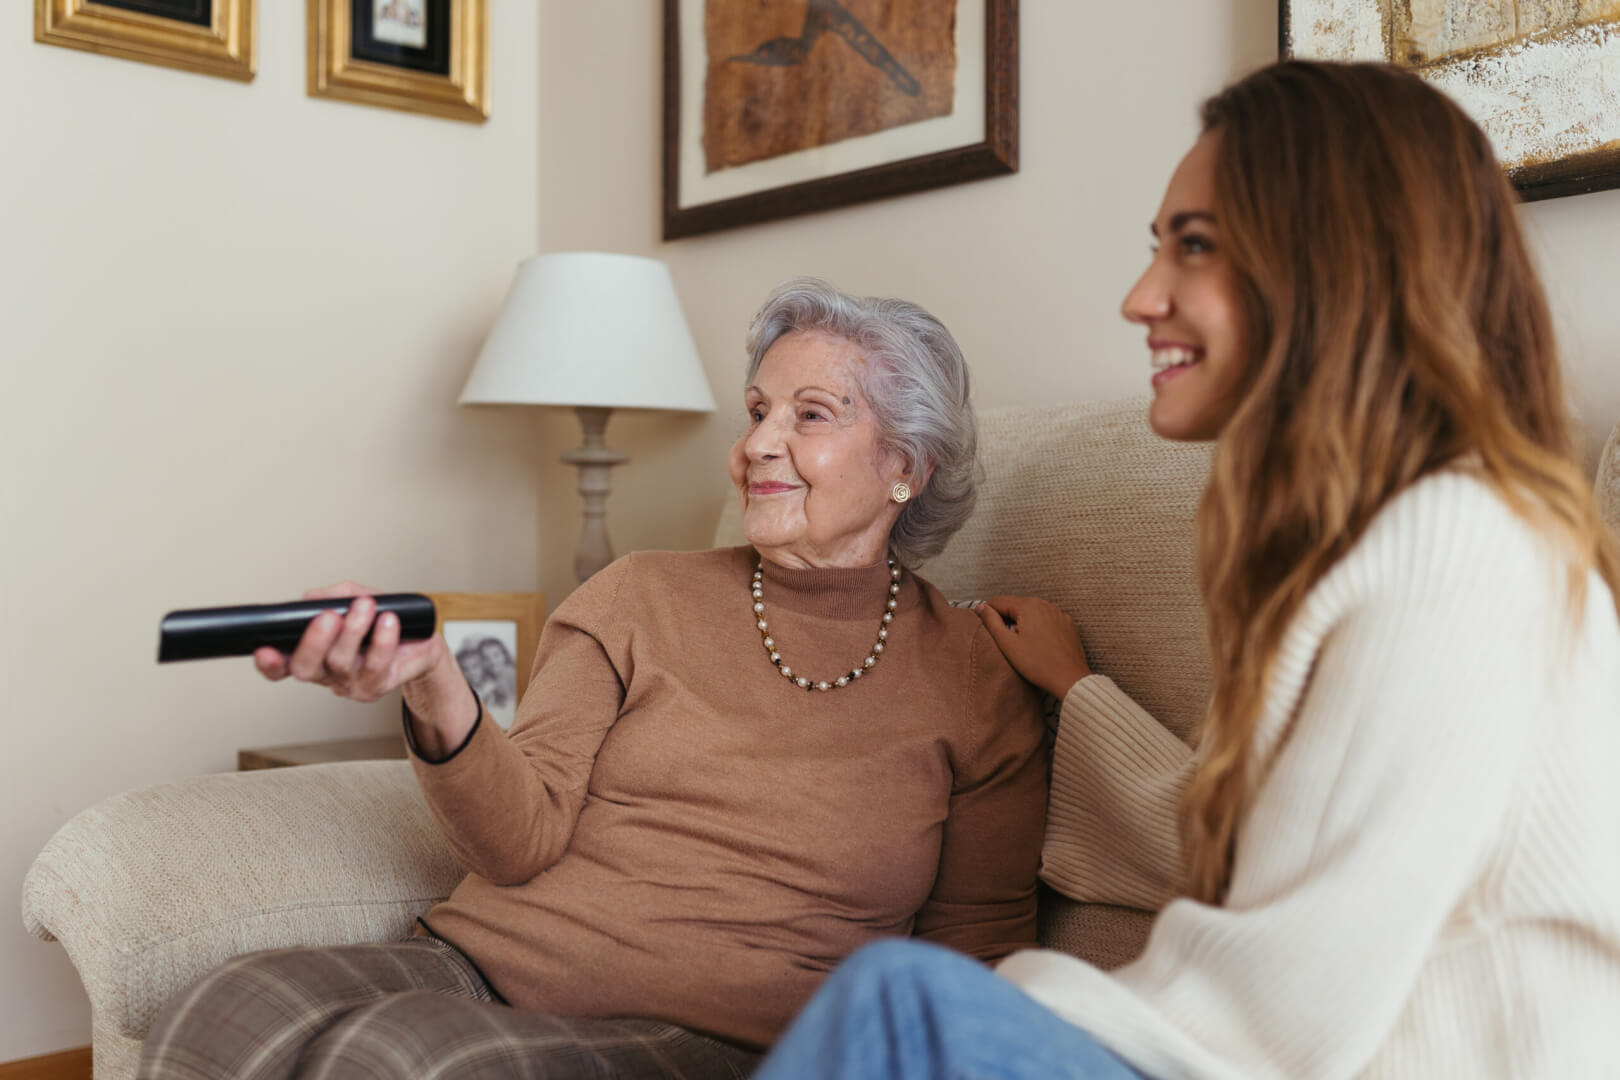 En la imagen aparece una señora mayor sentada en su sofá manejando el mando de la televisión junto a su cuidadora.